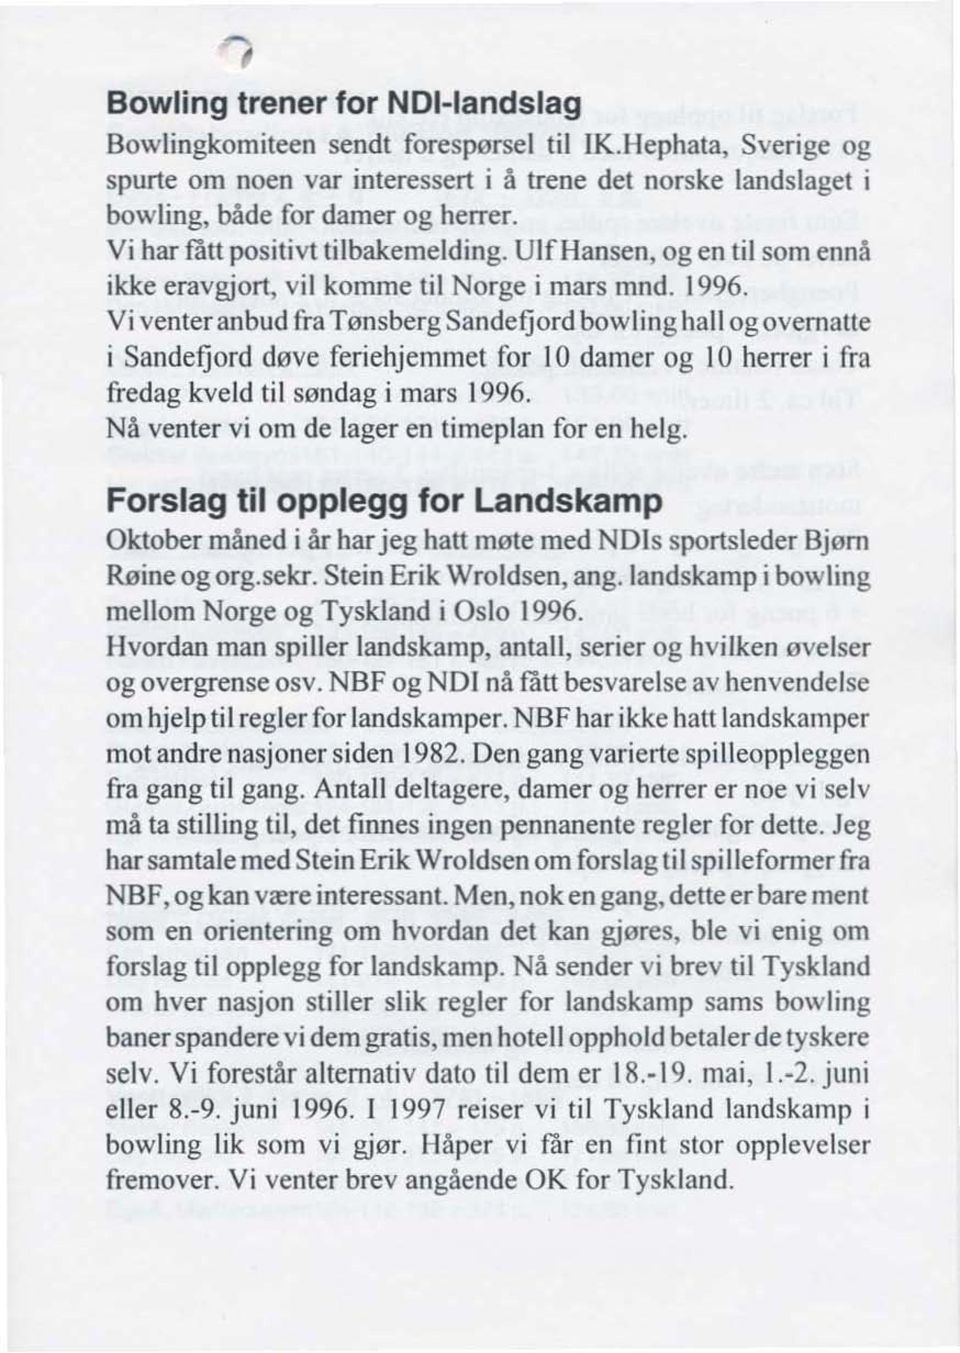 Vi venteranbud fra Tønsberg Sandefjord bowling hall ogovematte i Sandefjord døve feriehjemmet for 10 damer og 10 herrer i fra fredag kveld til søndag i mars 1996.